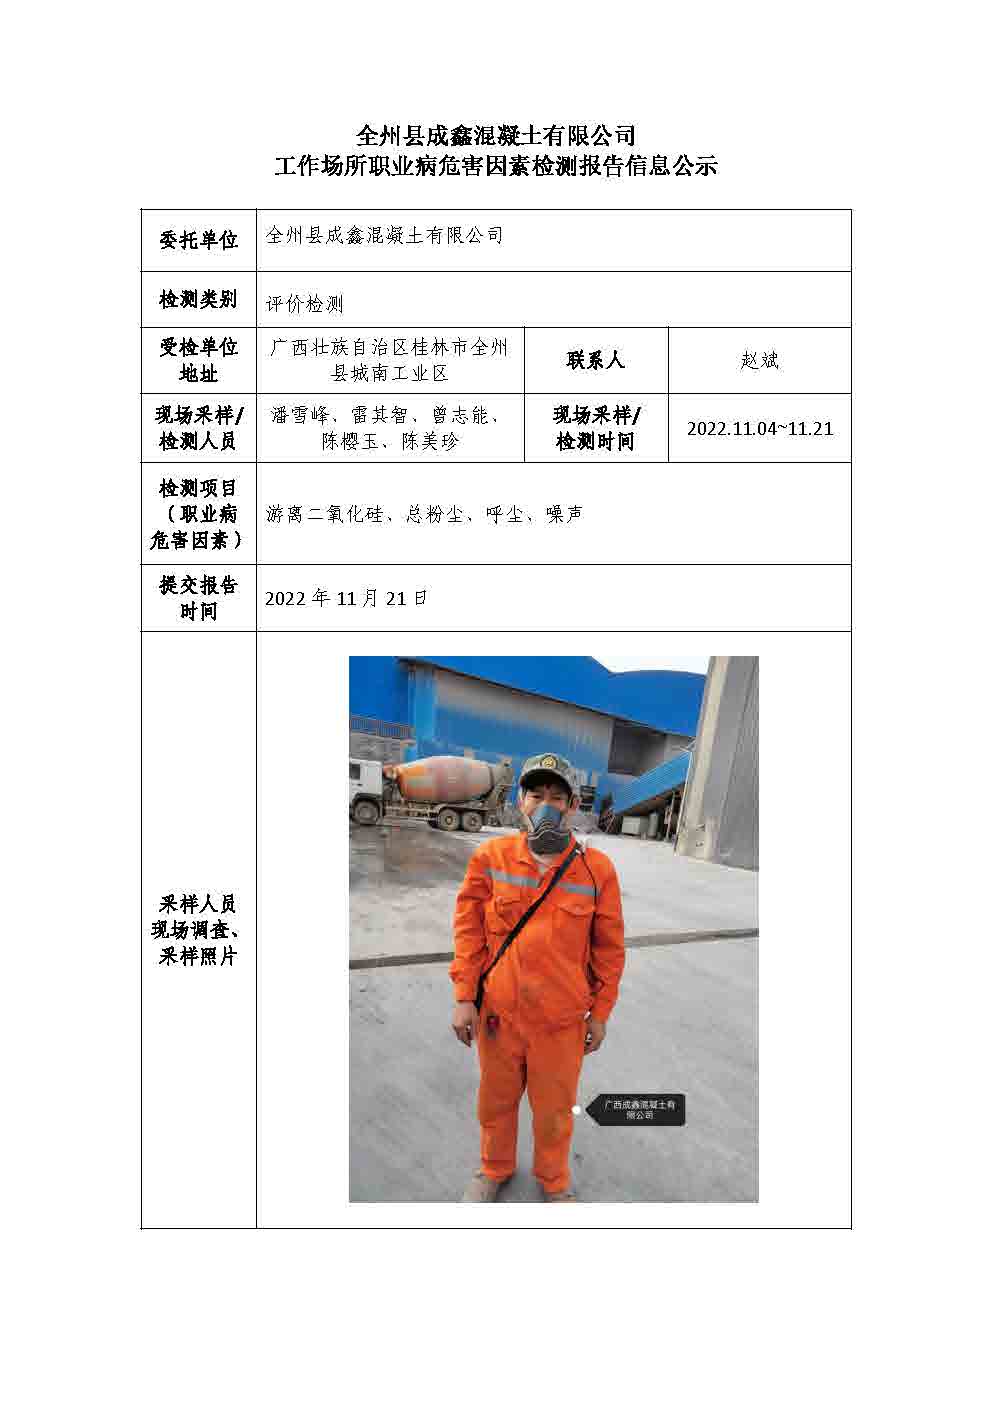 全州县成鑫混凝土有限公司工作场所职业病危害因素检测报告信息公示